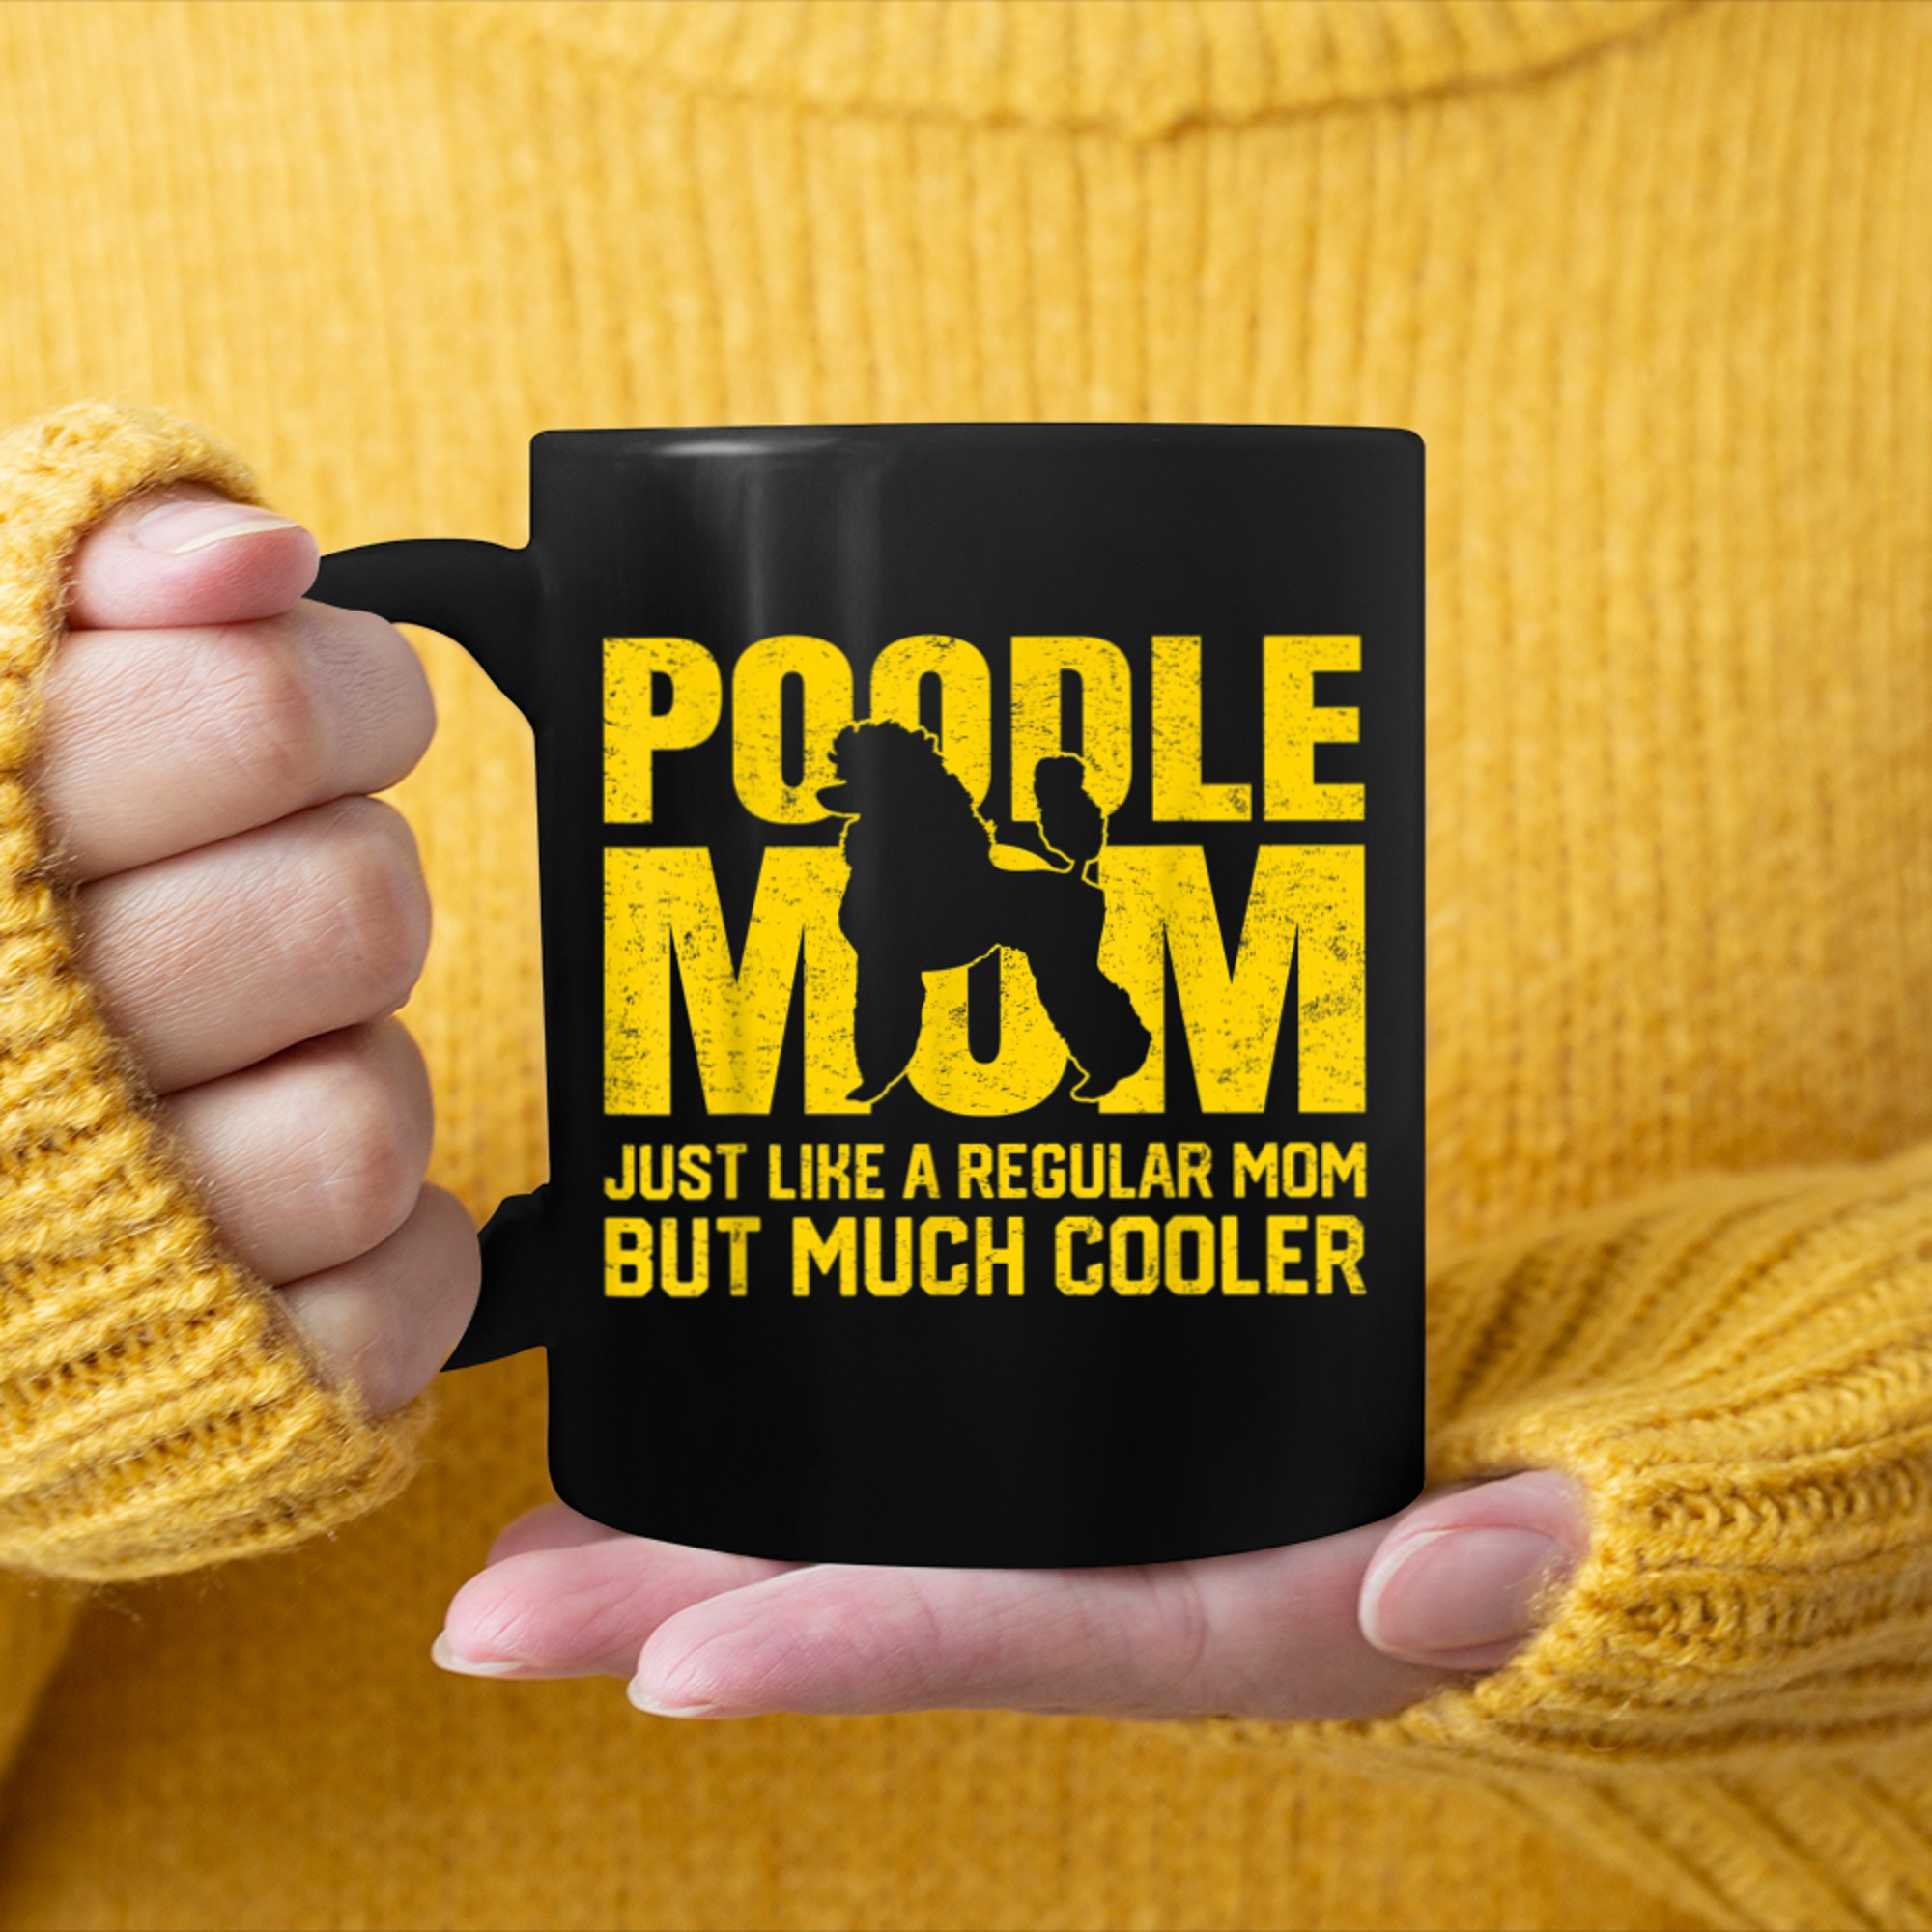 Best Poodle Mom Ever Dog Mother Mom Lover Owner Gifts mug black